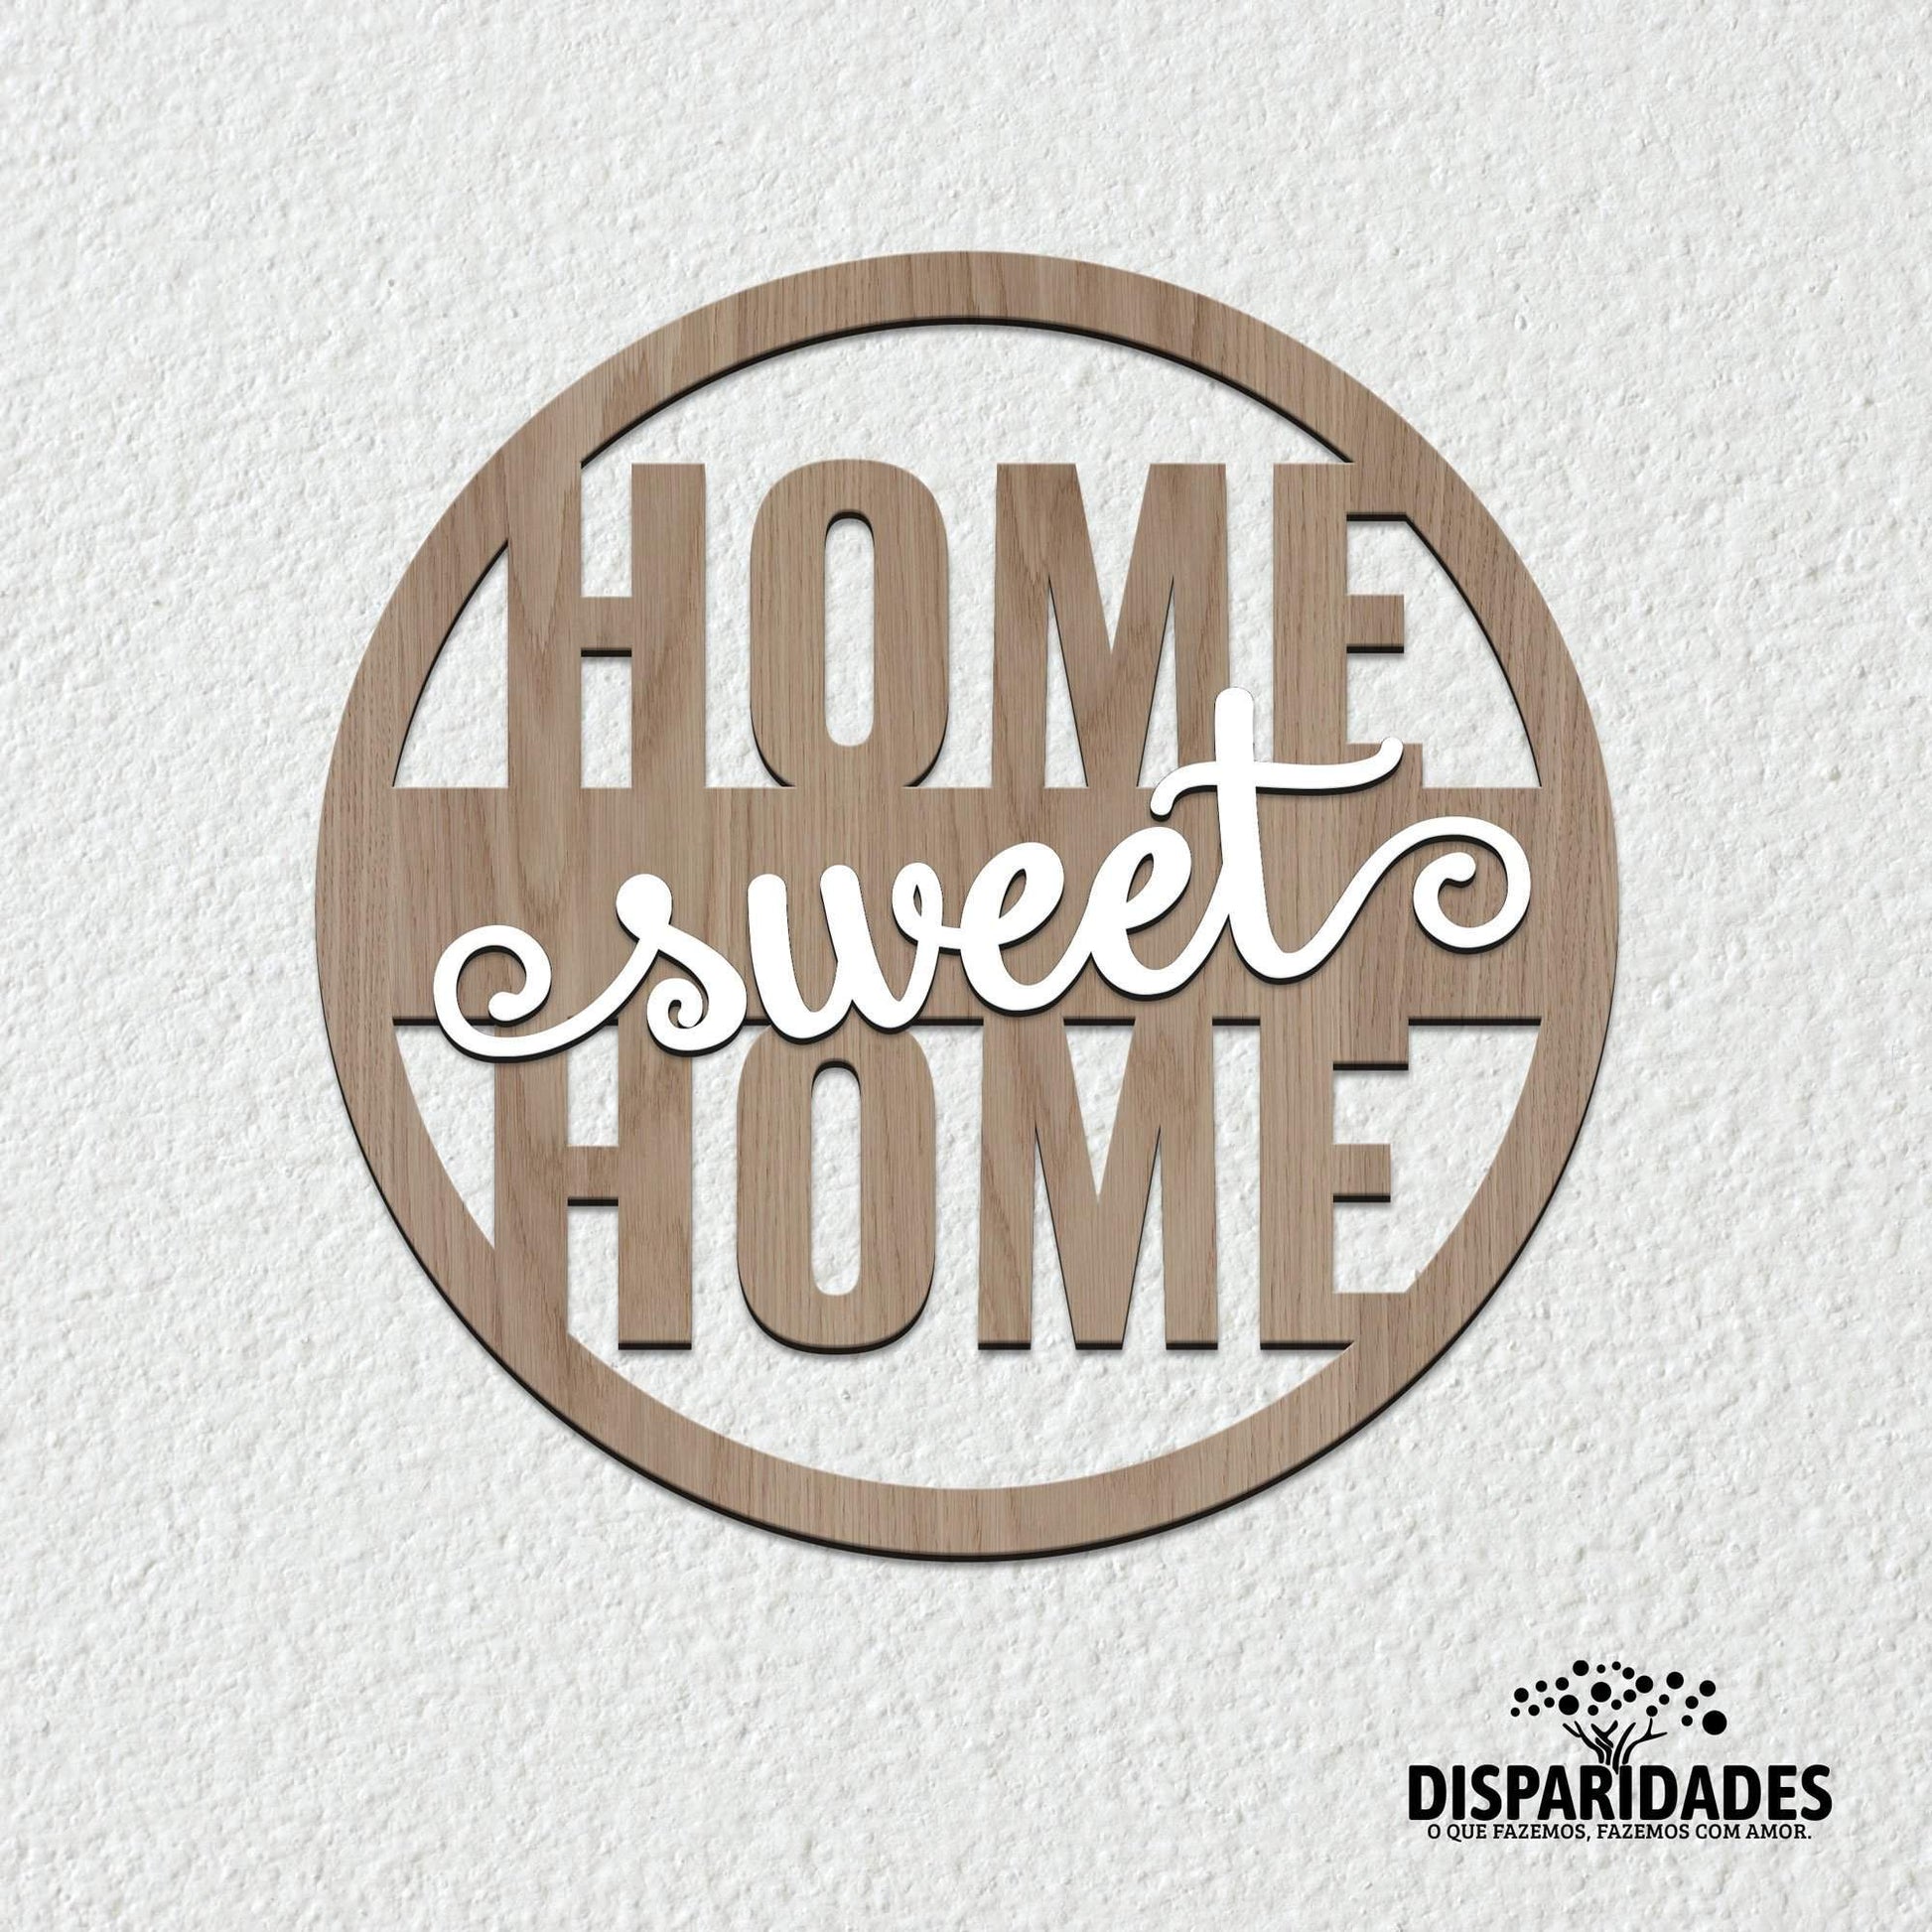 Placa Decorativa Redonda 'Home Sweet Home'-Produção própria-Cor_Branco,Cor_Preto,Decoração de parede,Tamanho_25 cm,Tamanho_40 cm